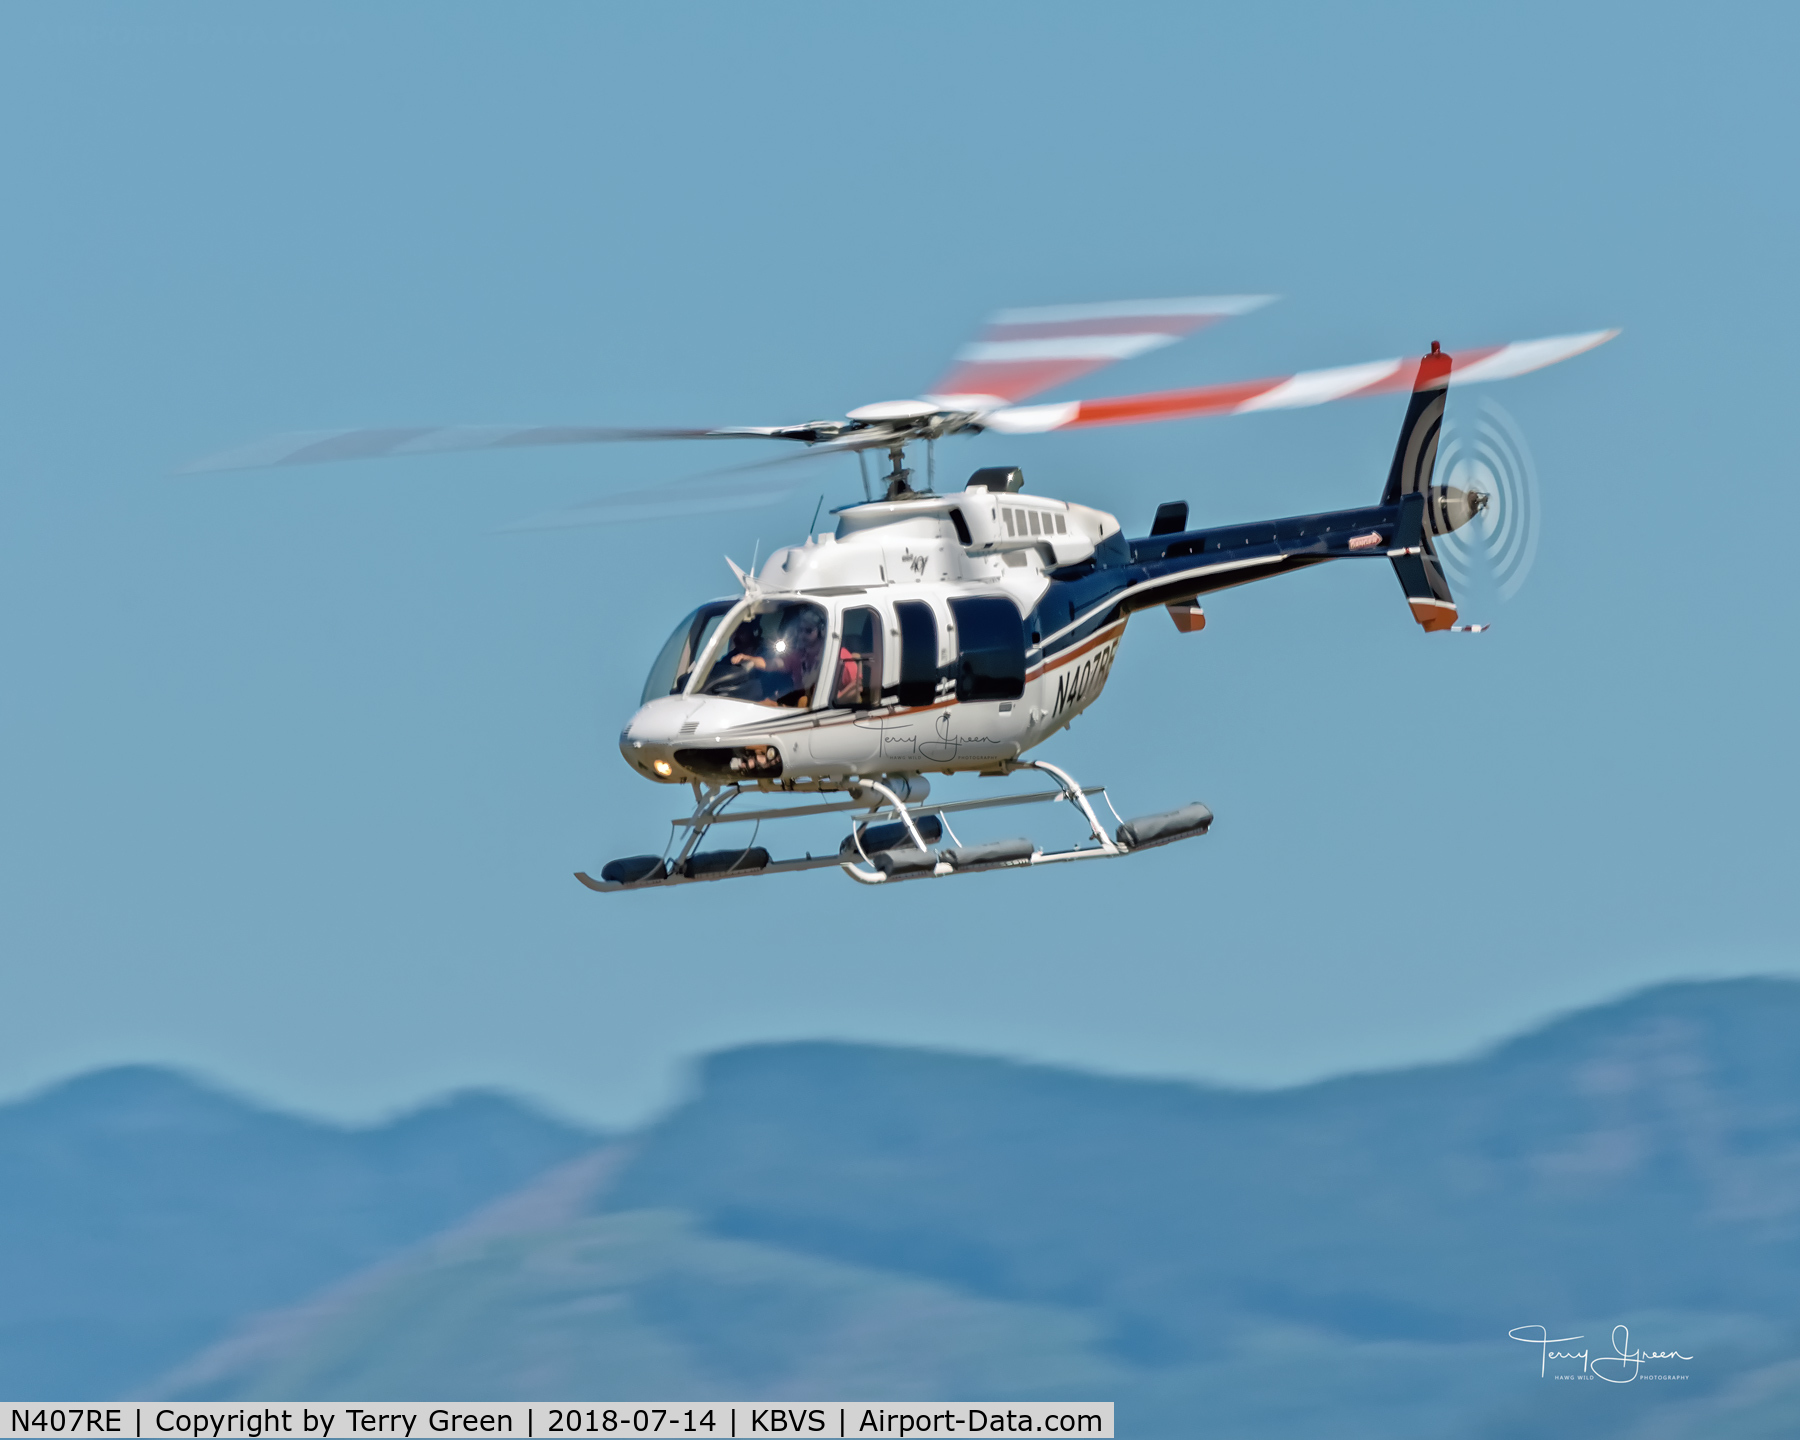 N407RE, 2009 Bell 407 C/N 53930, KBVS